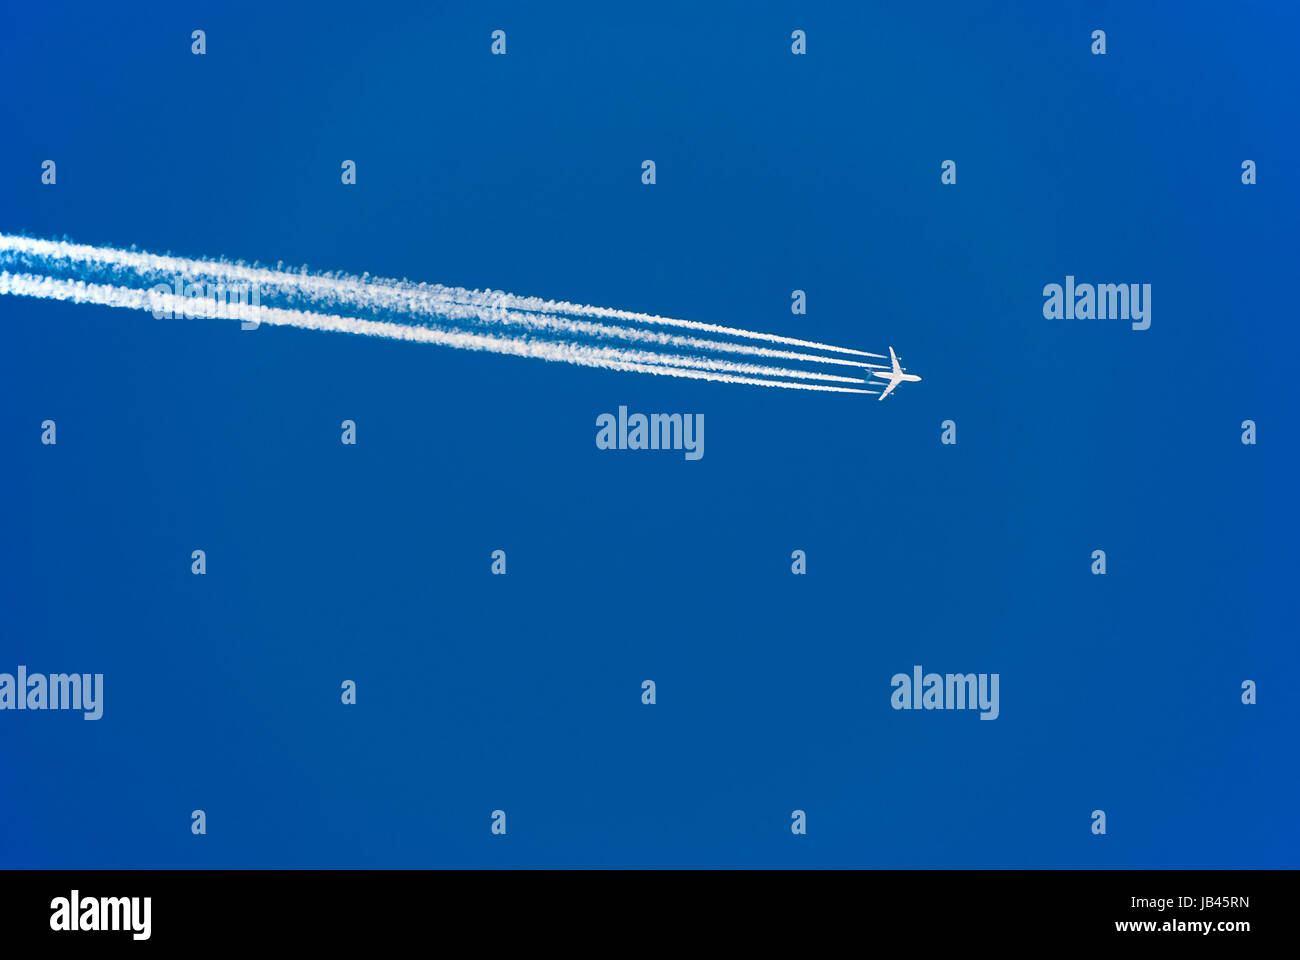 Flugzeug mit vier Triebwerken Kondensstreifen und am blauen Himmel ; avion avec quatre moteurs à réaction et les traînées de condensation dans le ciel bleu Banque D'Images